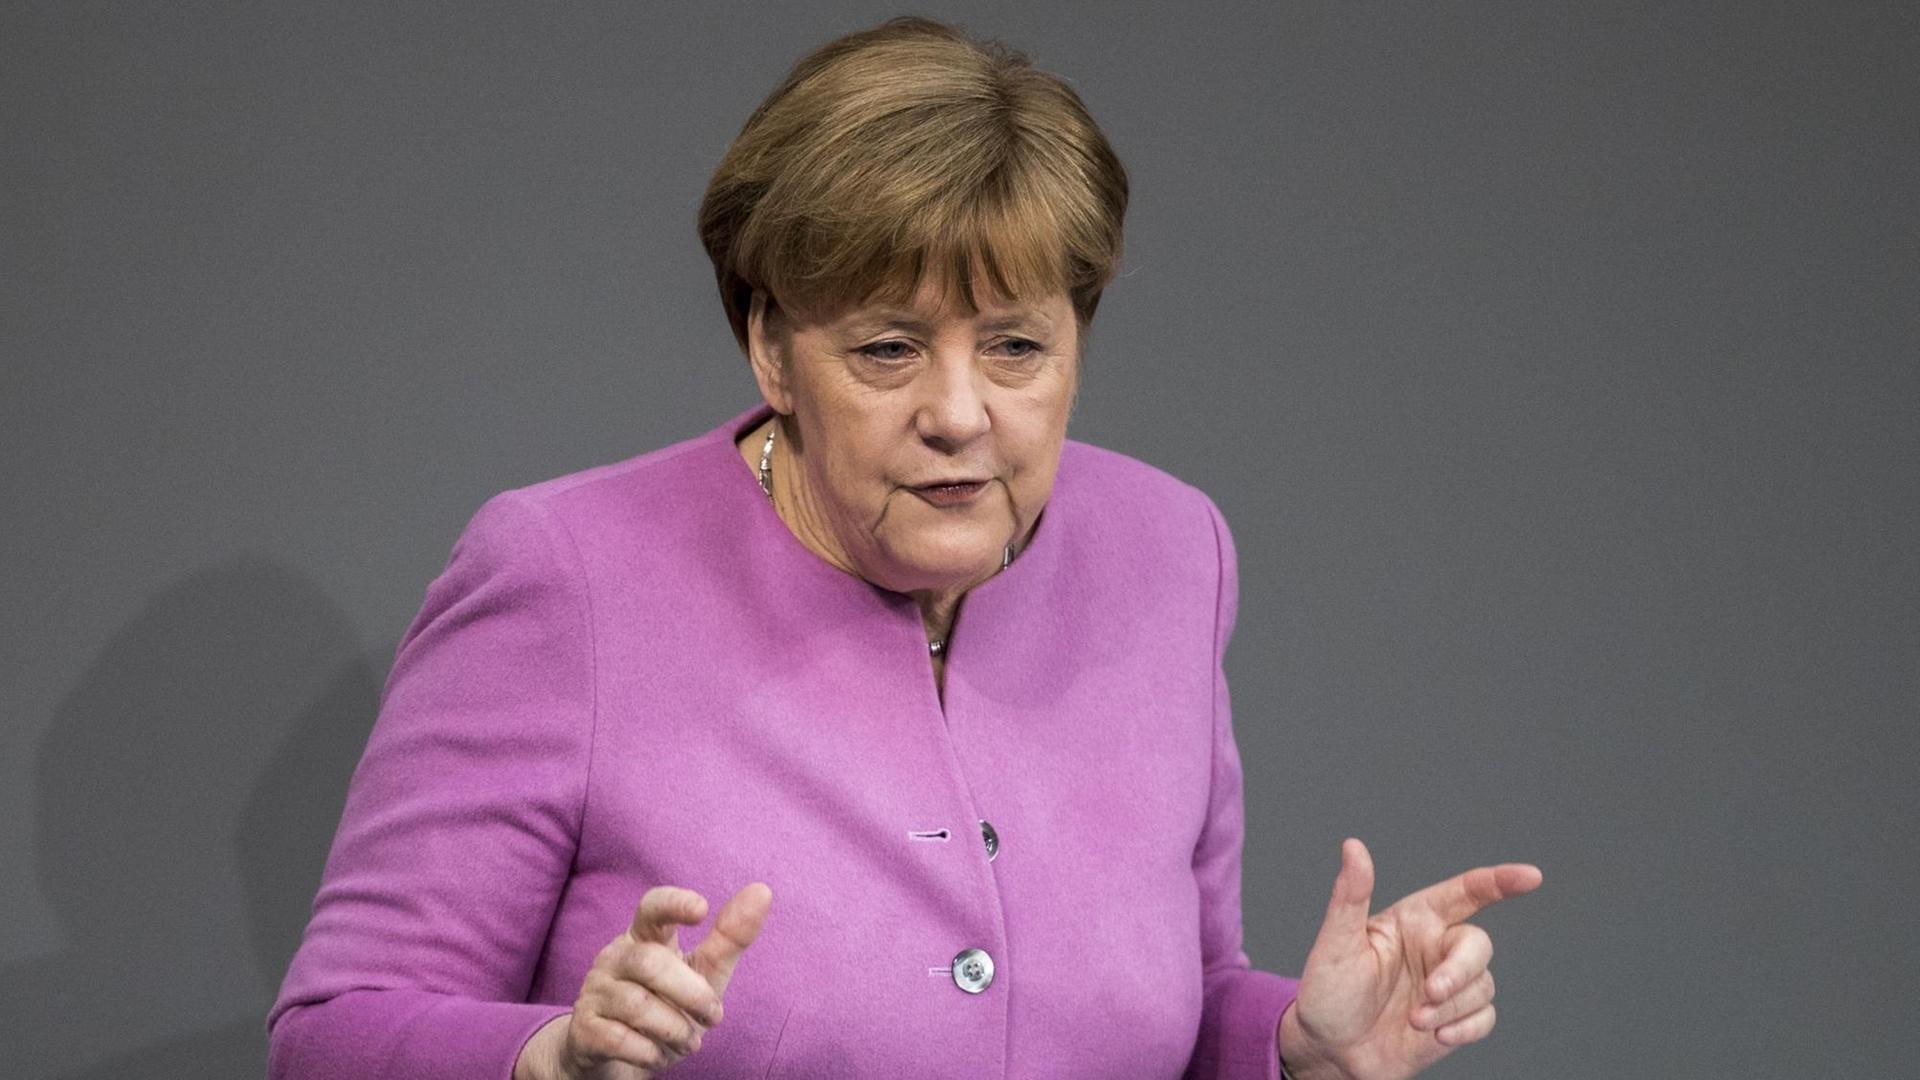 Bundeskanzlerin Angela Merkel (CDU) spricht am 09.03.2017 im Bundestag in Berlin. Merkel gab in der Sitzung eine Regierungserklärung zum bevorstehenden EU-Gipfel ab.